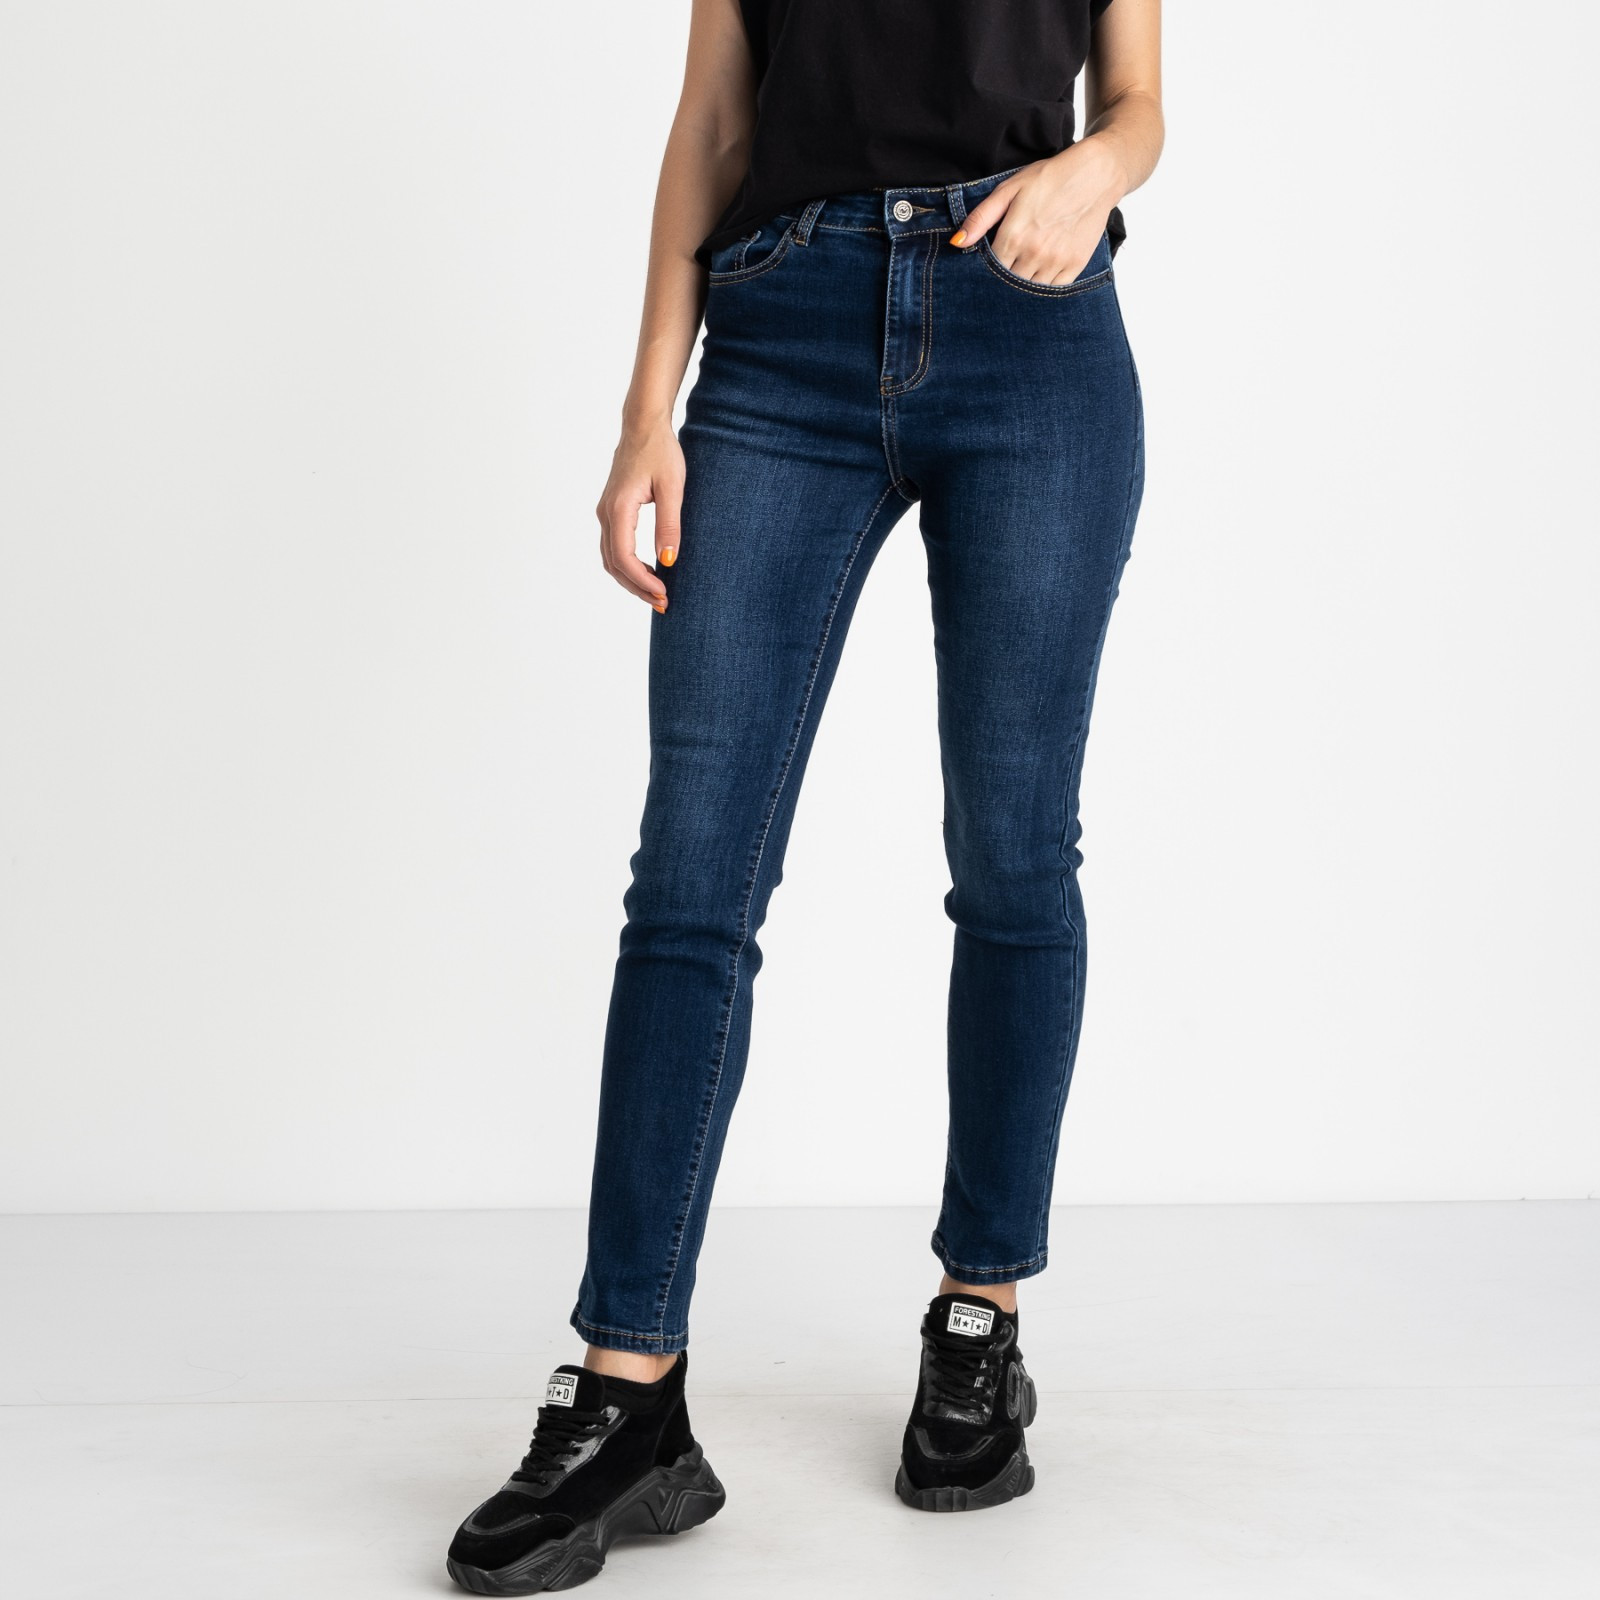 5030 New Jeans американка полубатальная синяя стрейчевая (6 ед. размеры: 28.29.30.31.32.33)